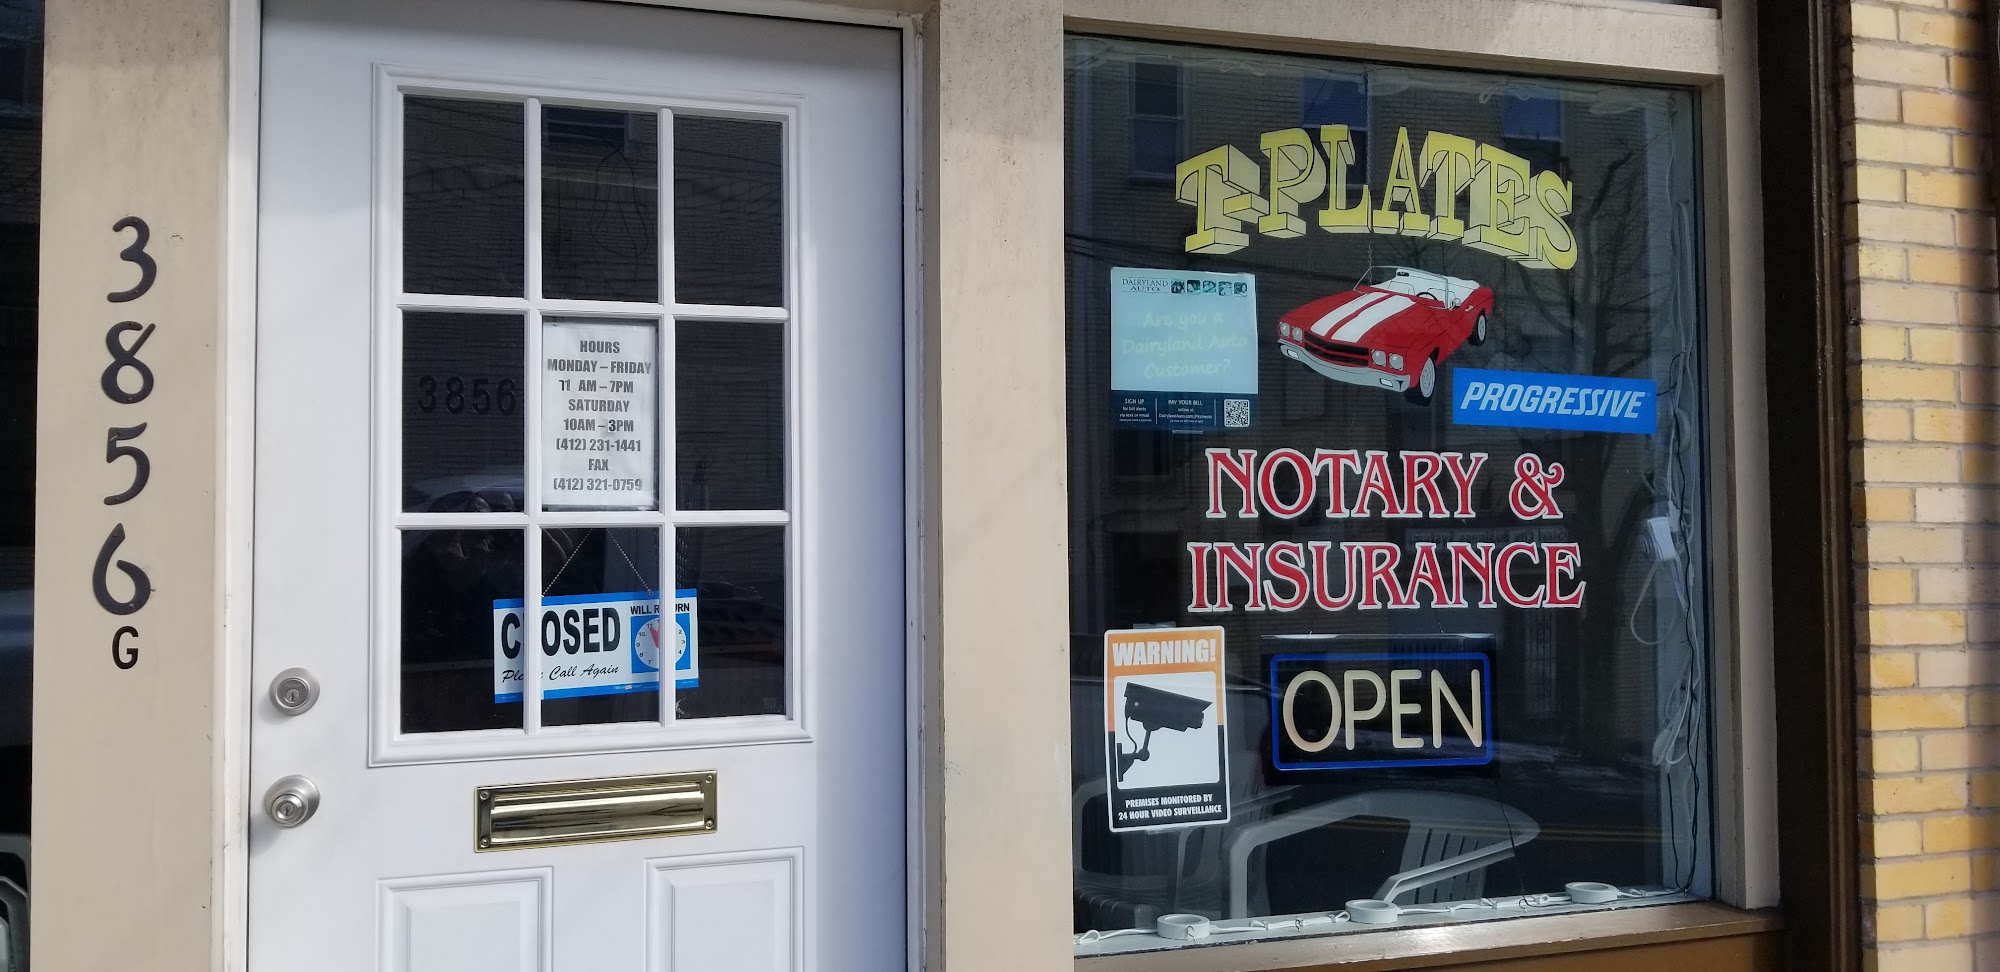 Salvatore's Notary & Insurance